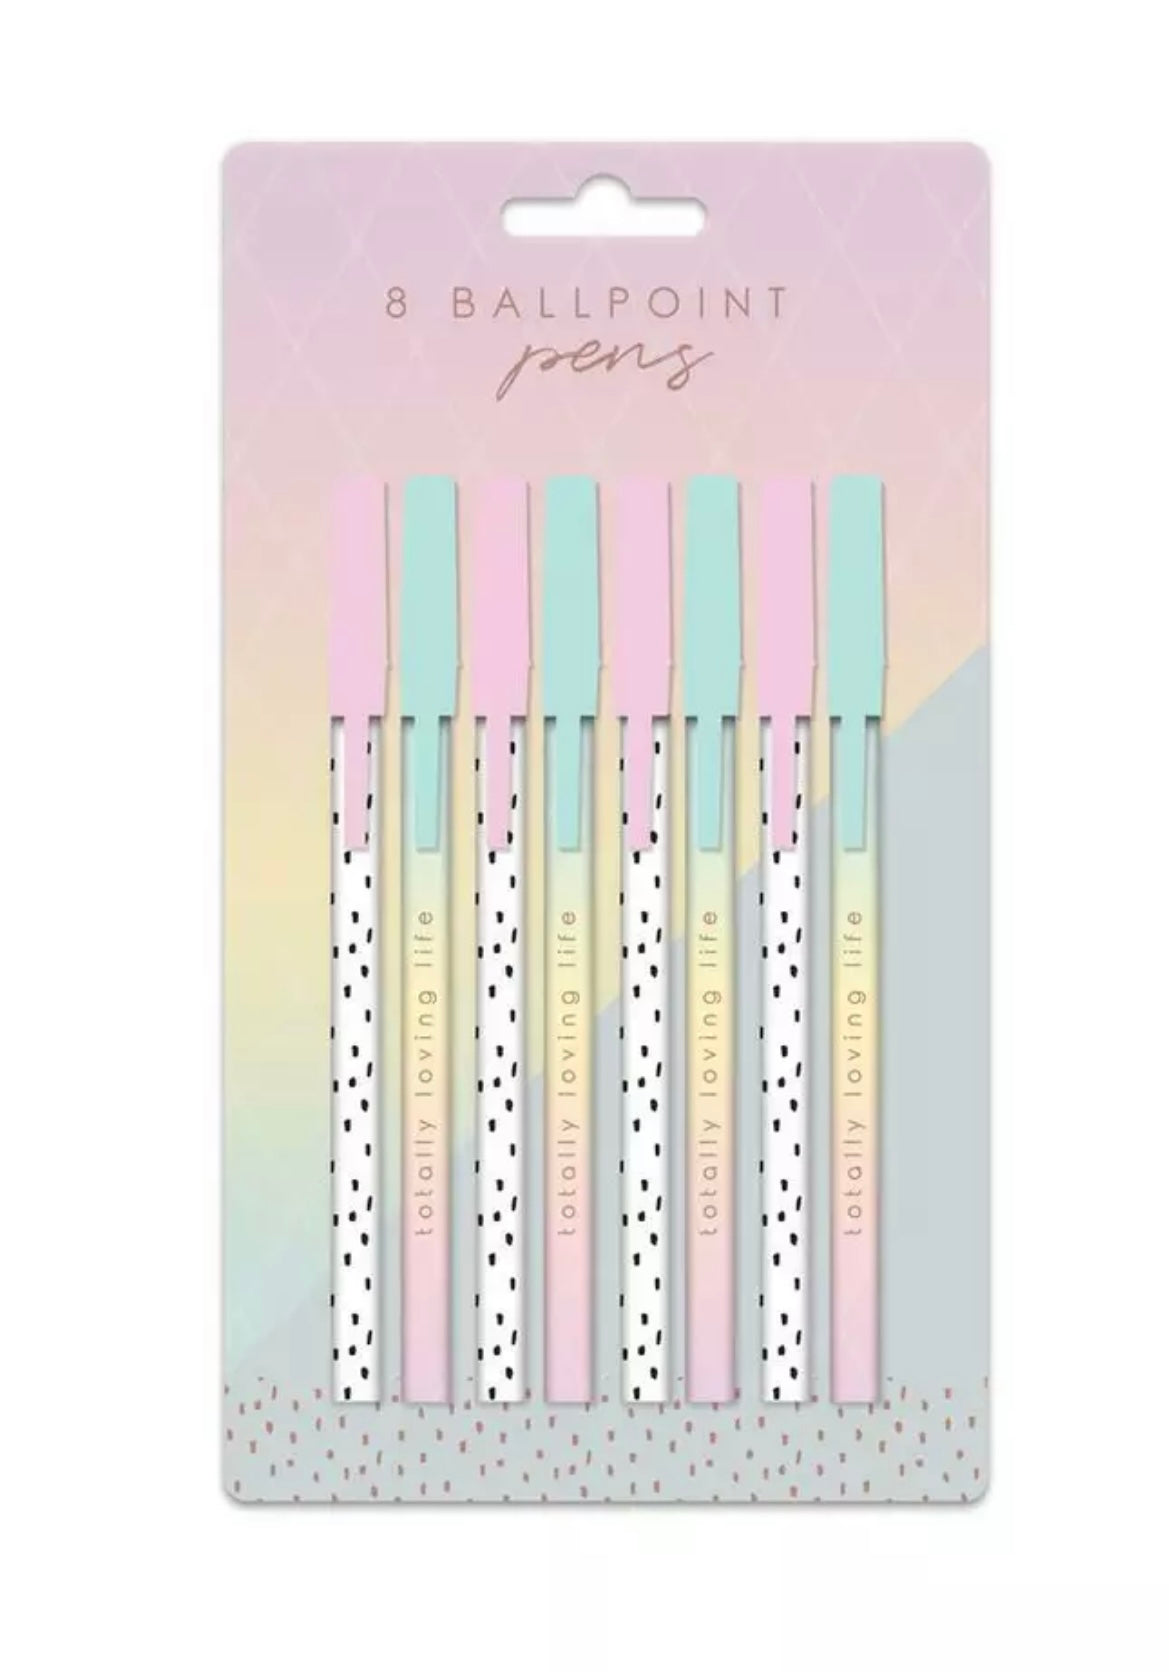 ‘Totally Loving Life’ X8 Ballpoint Pens Pack